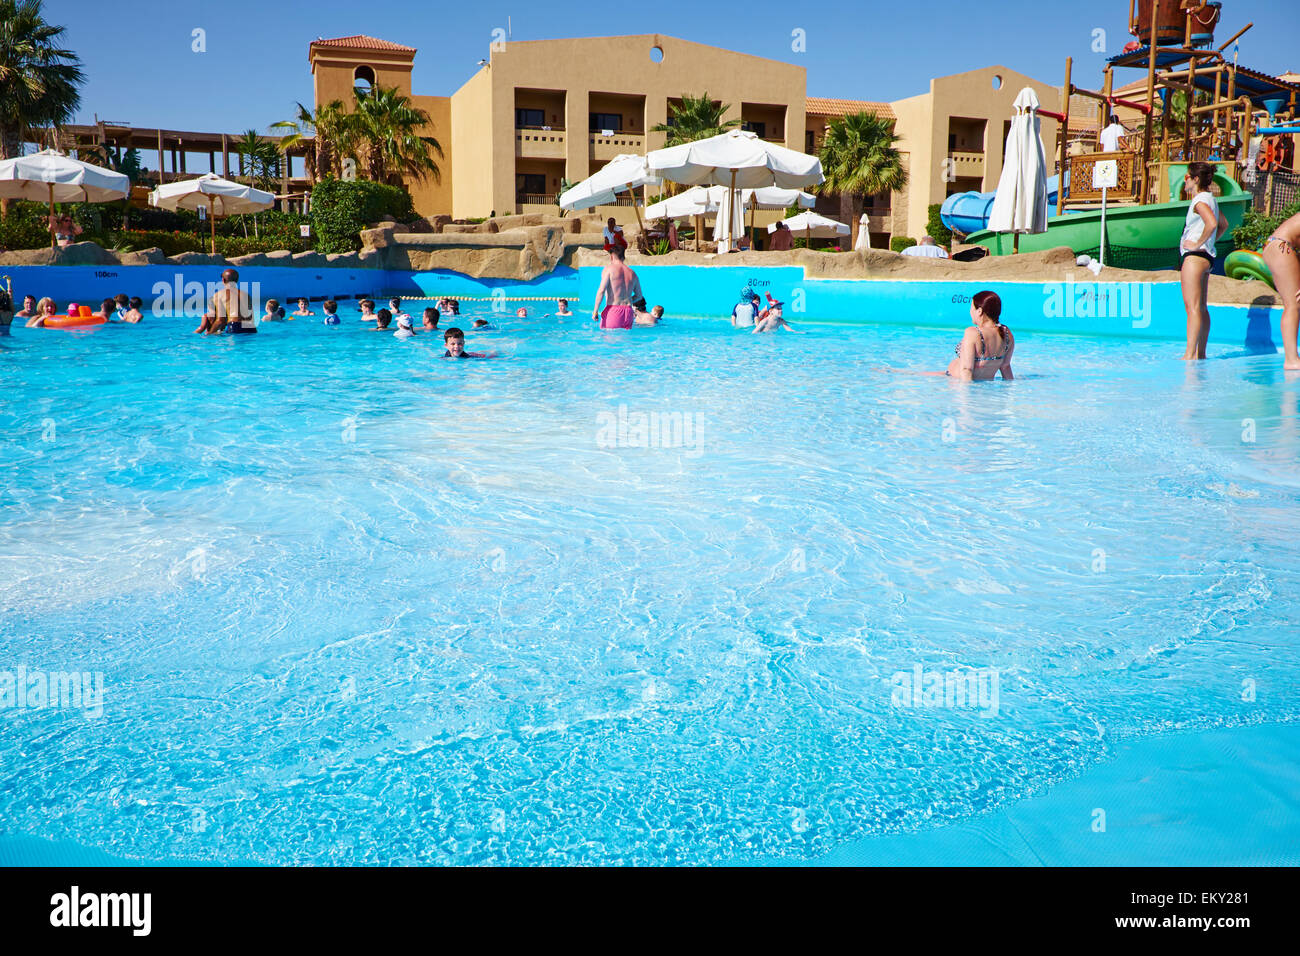 Menschen, die genießen einen kleinen Swimming Pool hat eine Welle Aktion Korallenmeer Aqua Club Resort El-Salam Road Sharm El Sheikh Ägypten Stockfoto